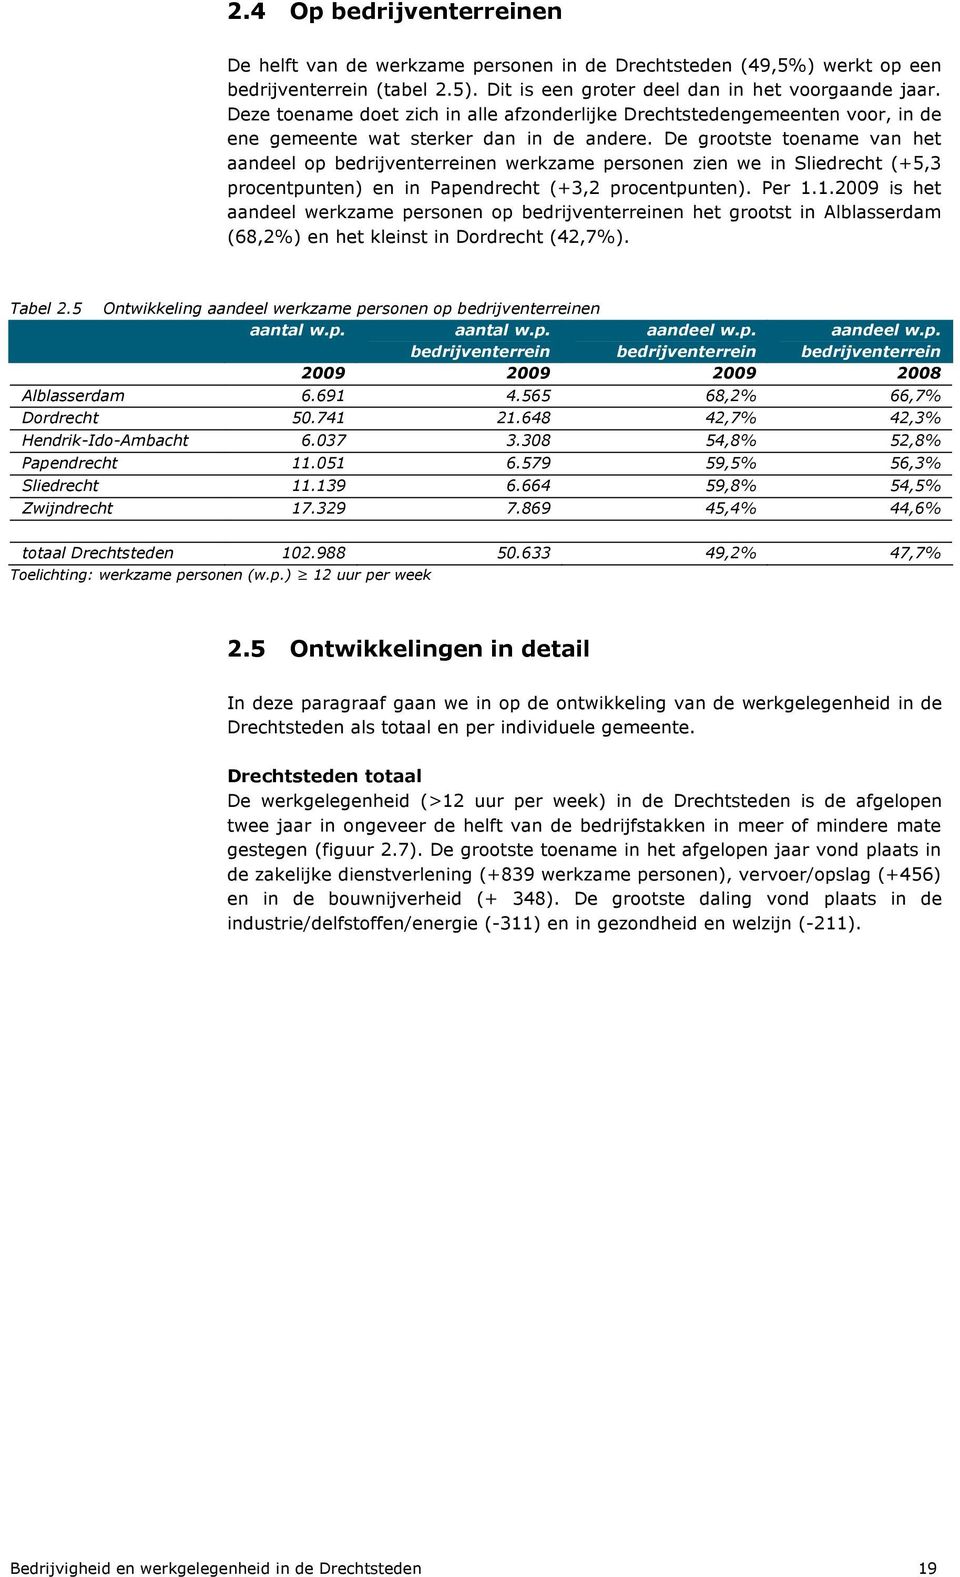 De grootste toename van het aandeel op bedrijventerreinen werkzame personen zien we in Sliedrecht (+5,3 procentpunten) en in Papendrecht (+3,2 procentpunten). Per 1.